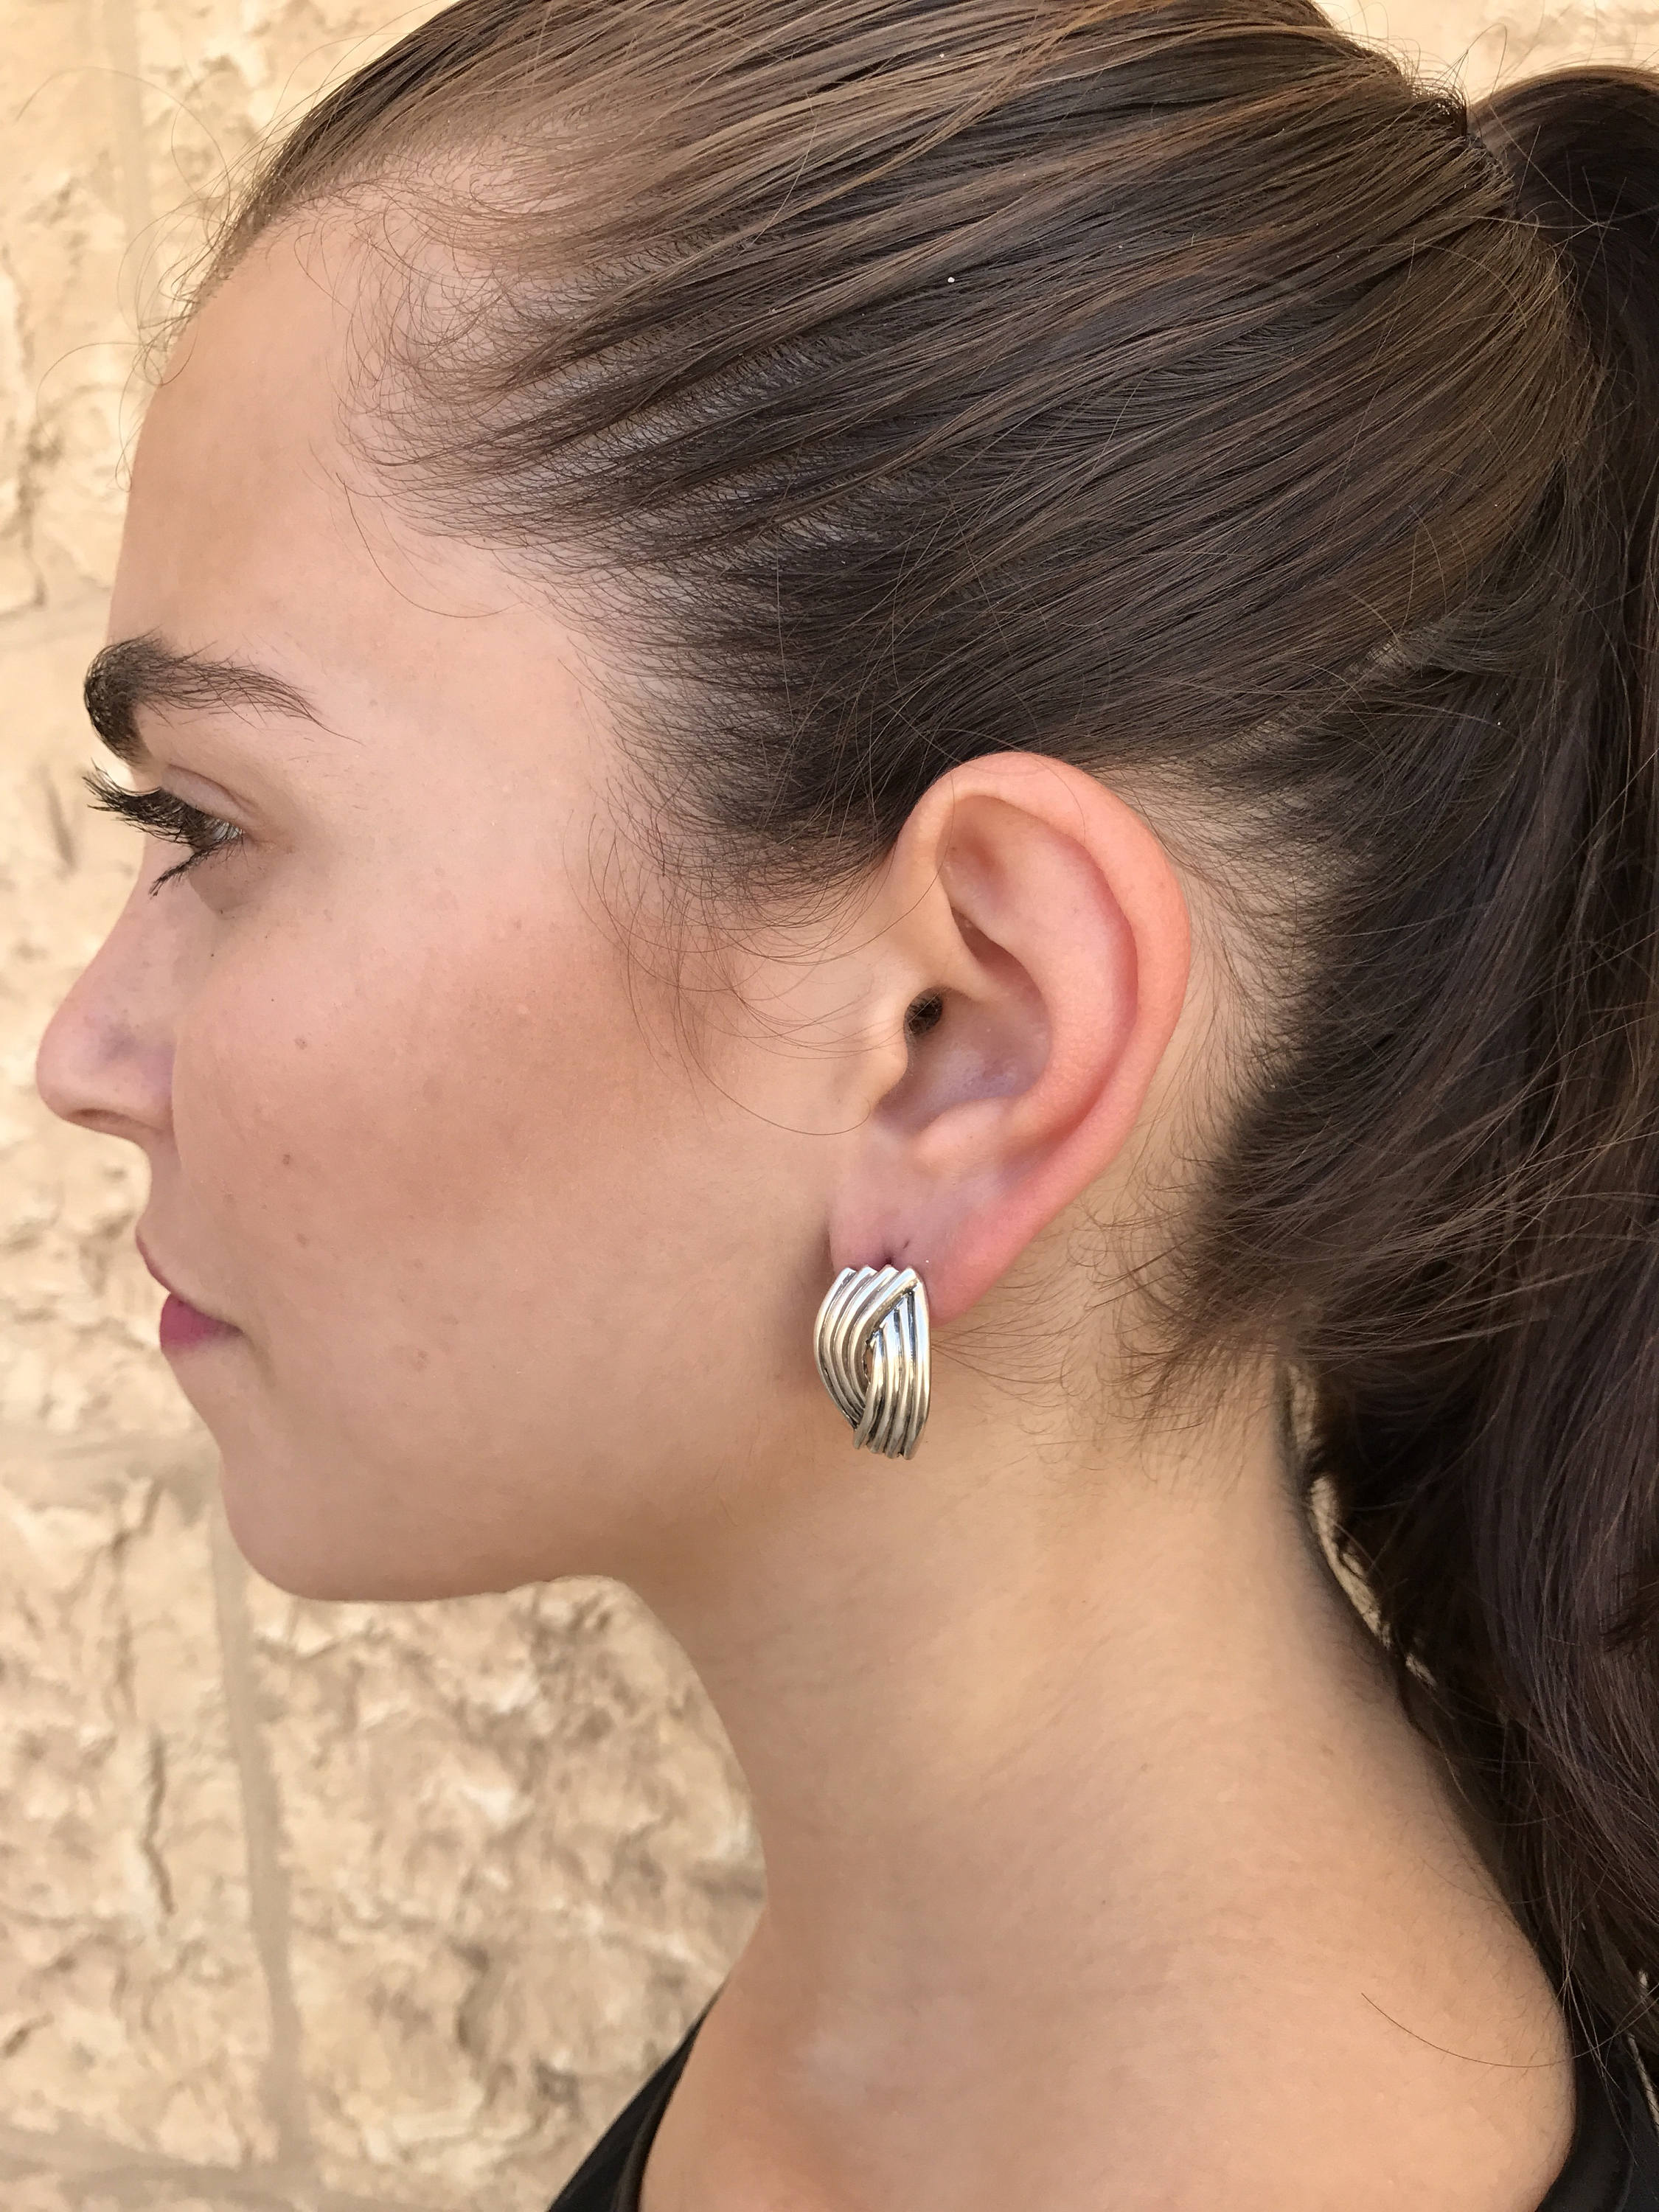 Silver Earrings, Designer Earrings, Statement Earrings, Unique Earrings, Artistic Earrings, Artisan Earrings, Solid Silver, Stud Earrings